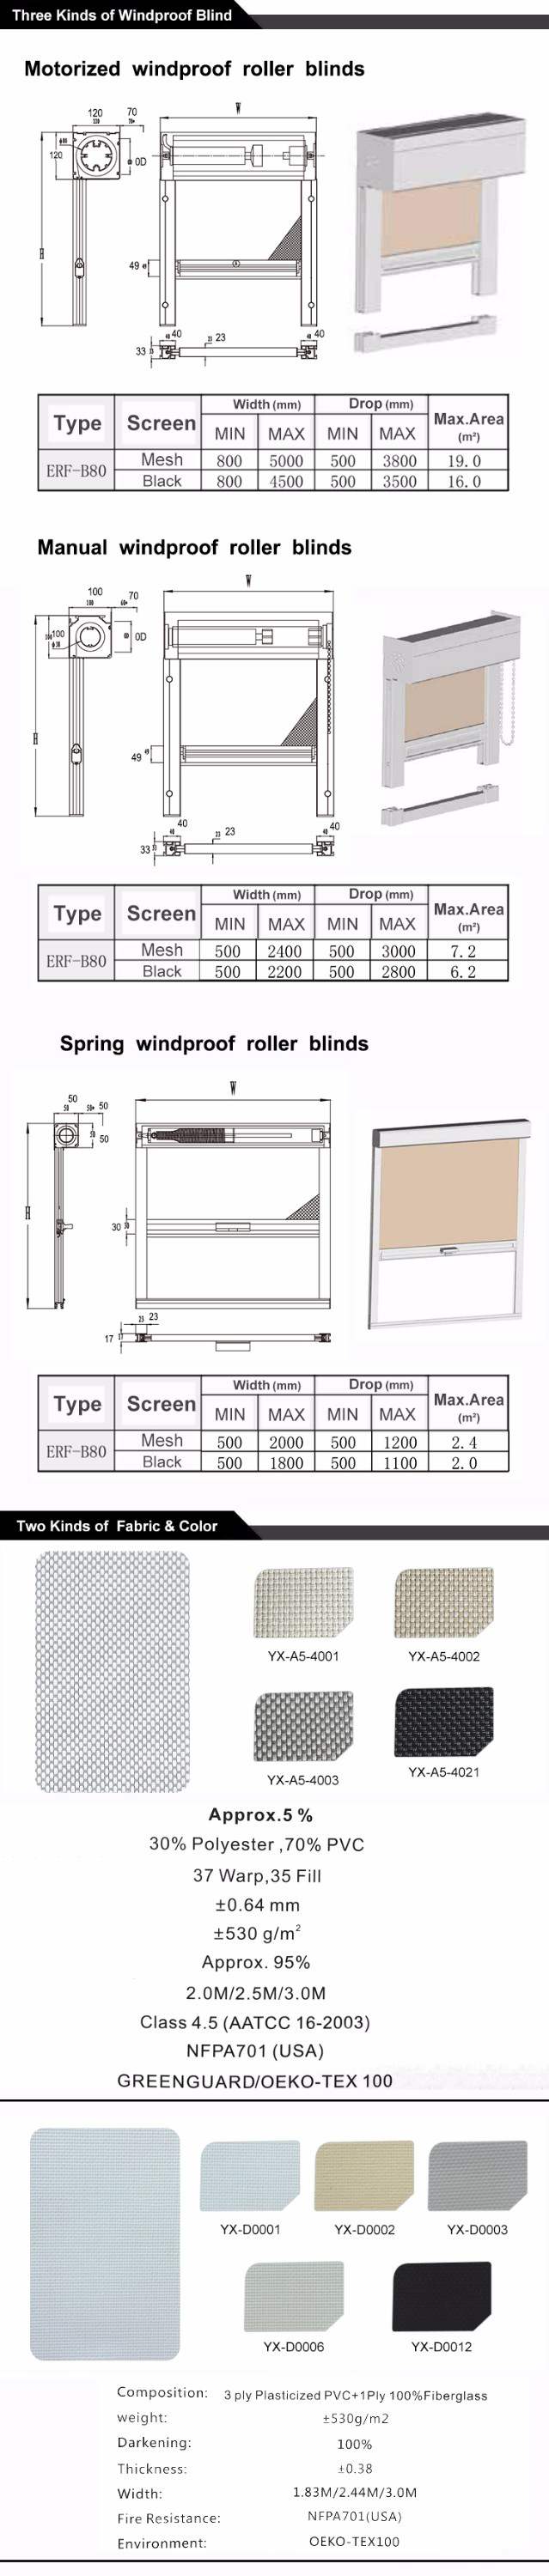 Sunscreen Waterproof Windproof Outdoor Roller Shad